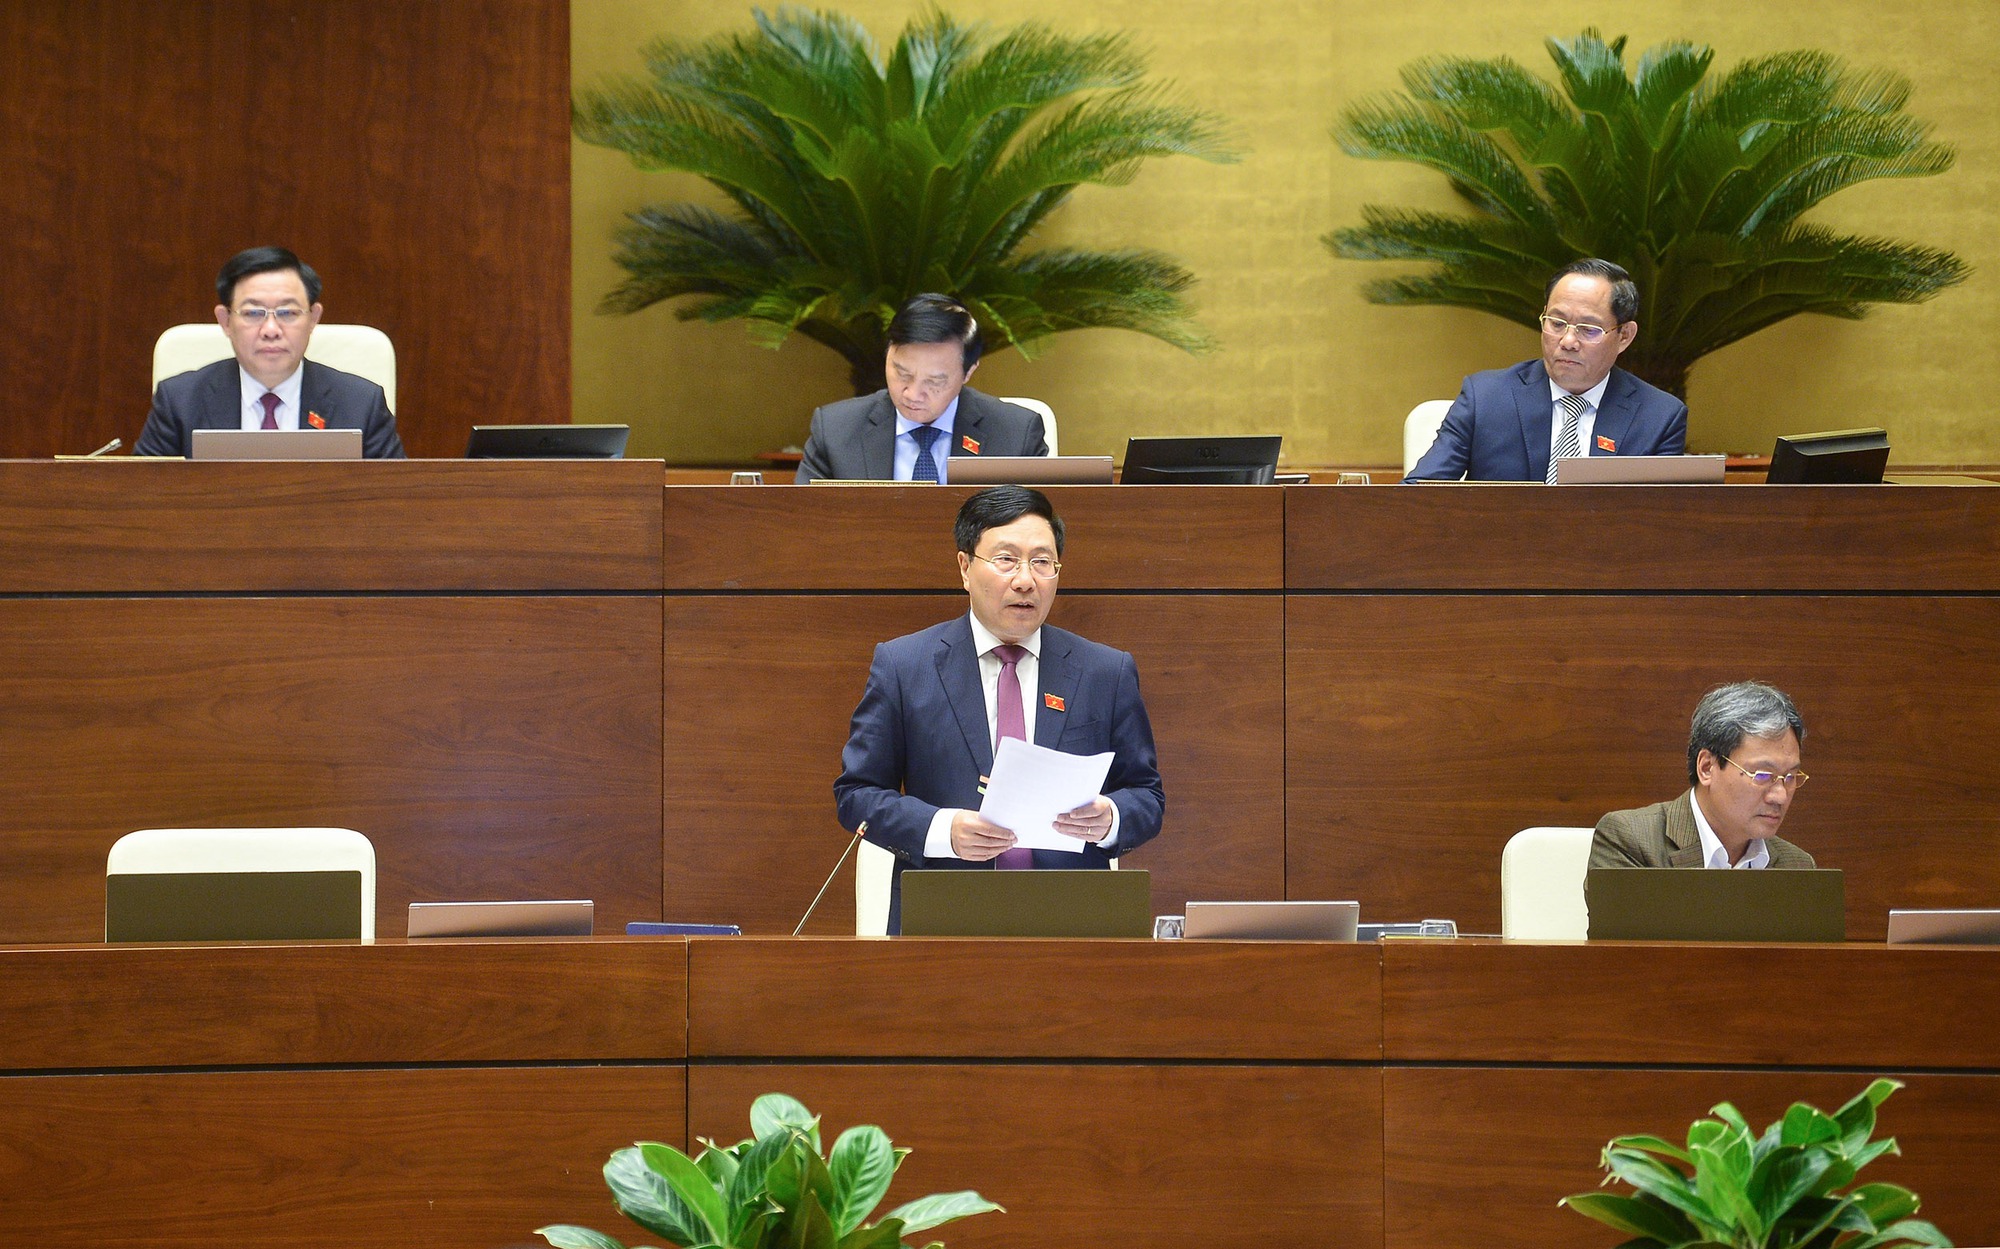 Phó Thủ tướng Thường trực báo cáo giải trình nhiều vấn đề cử tri quan tâm - Ảnh 4.